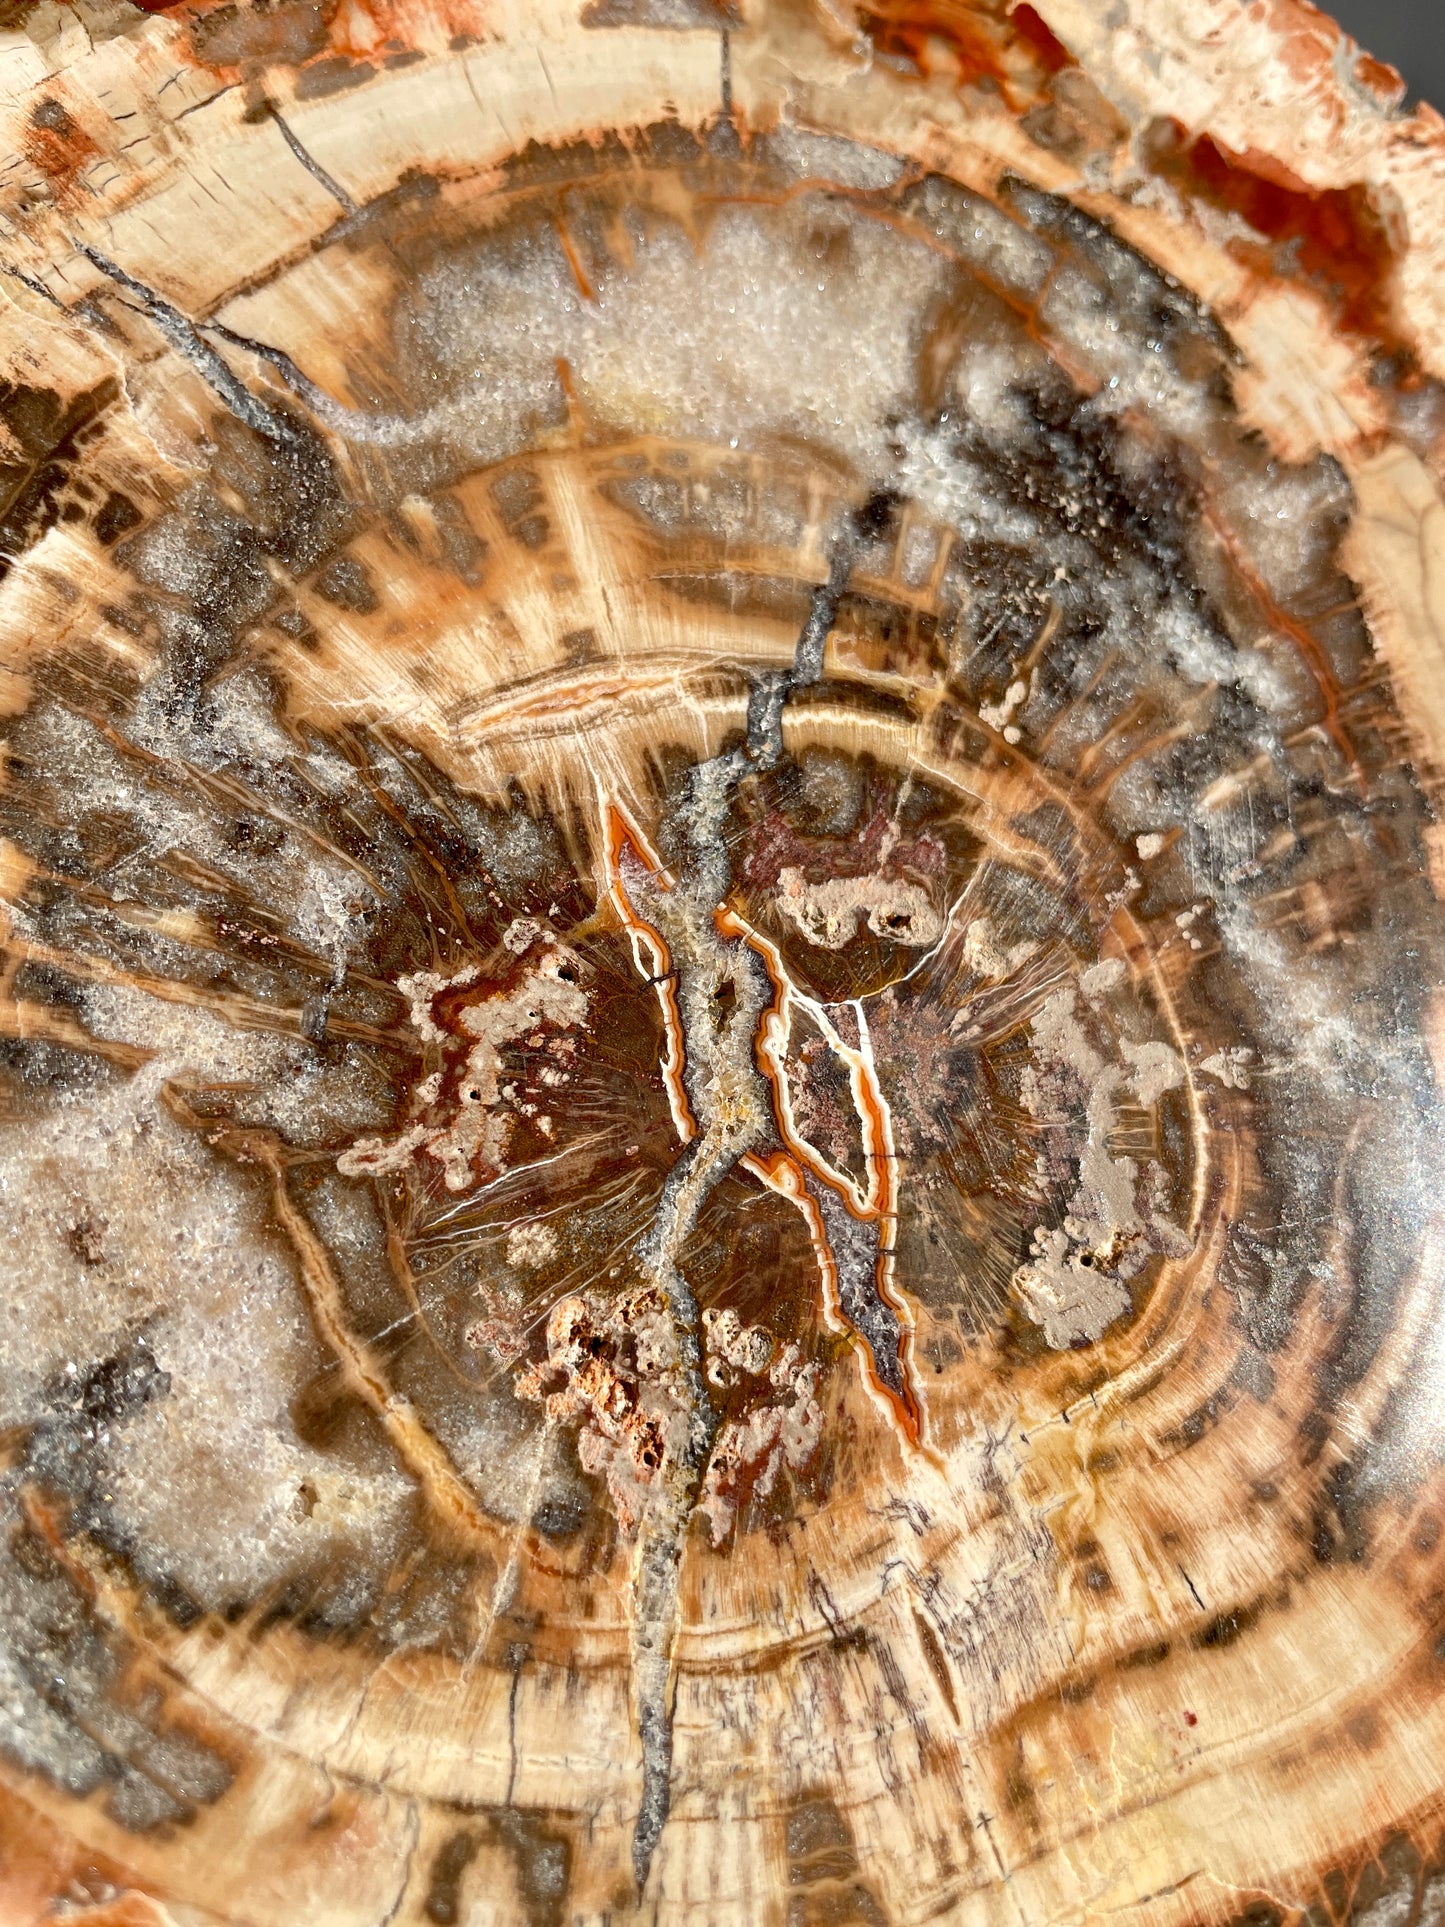 Large Madagascar Petrified Wood Polished Slab With Plastic Stand